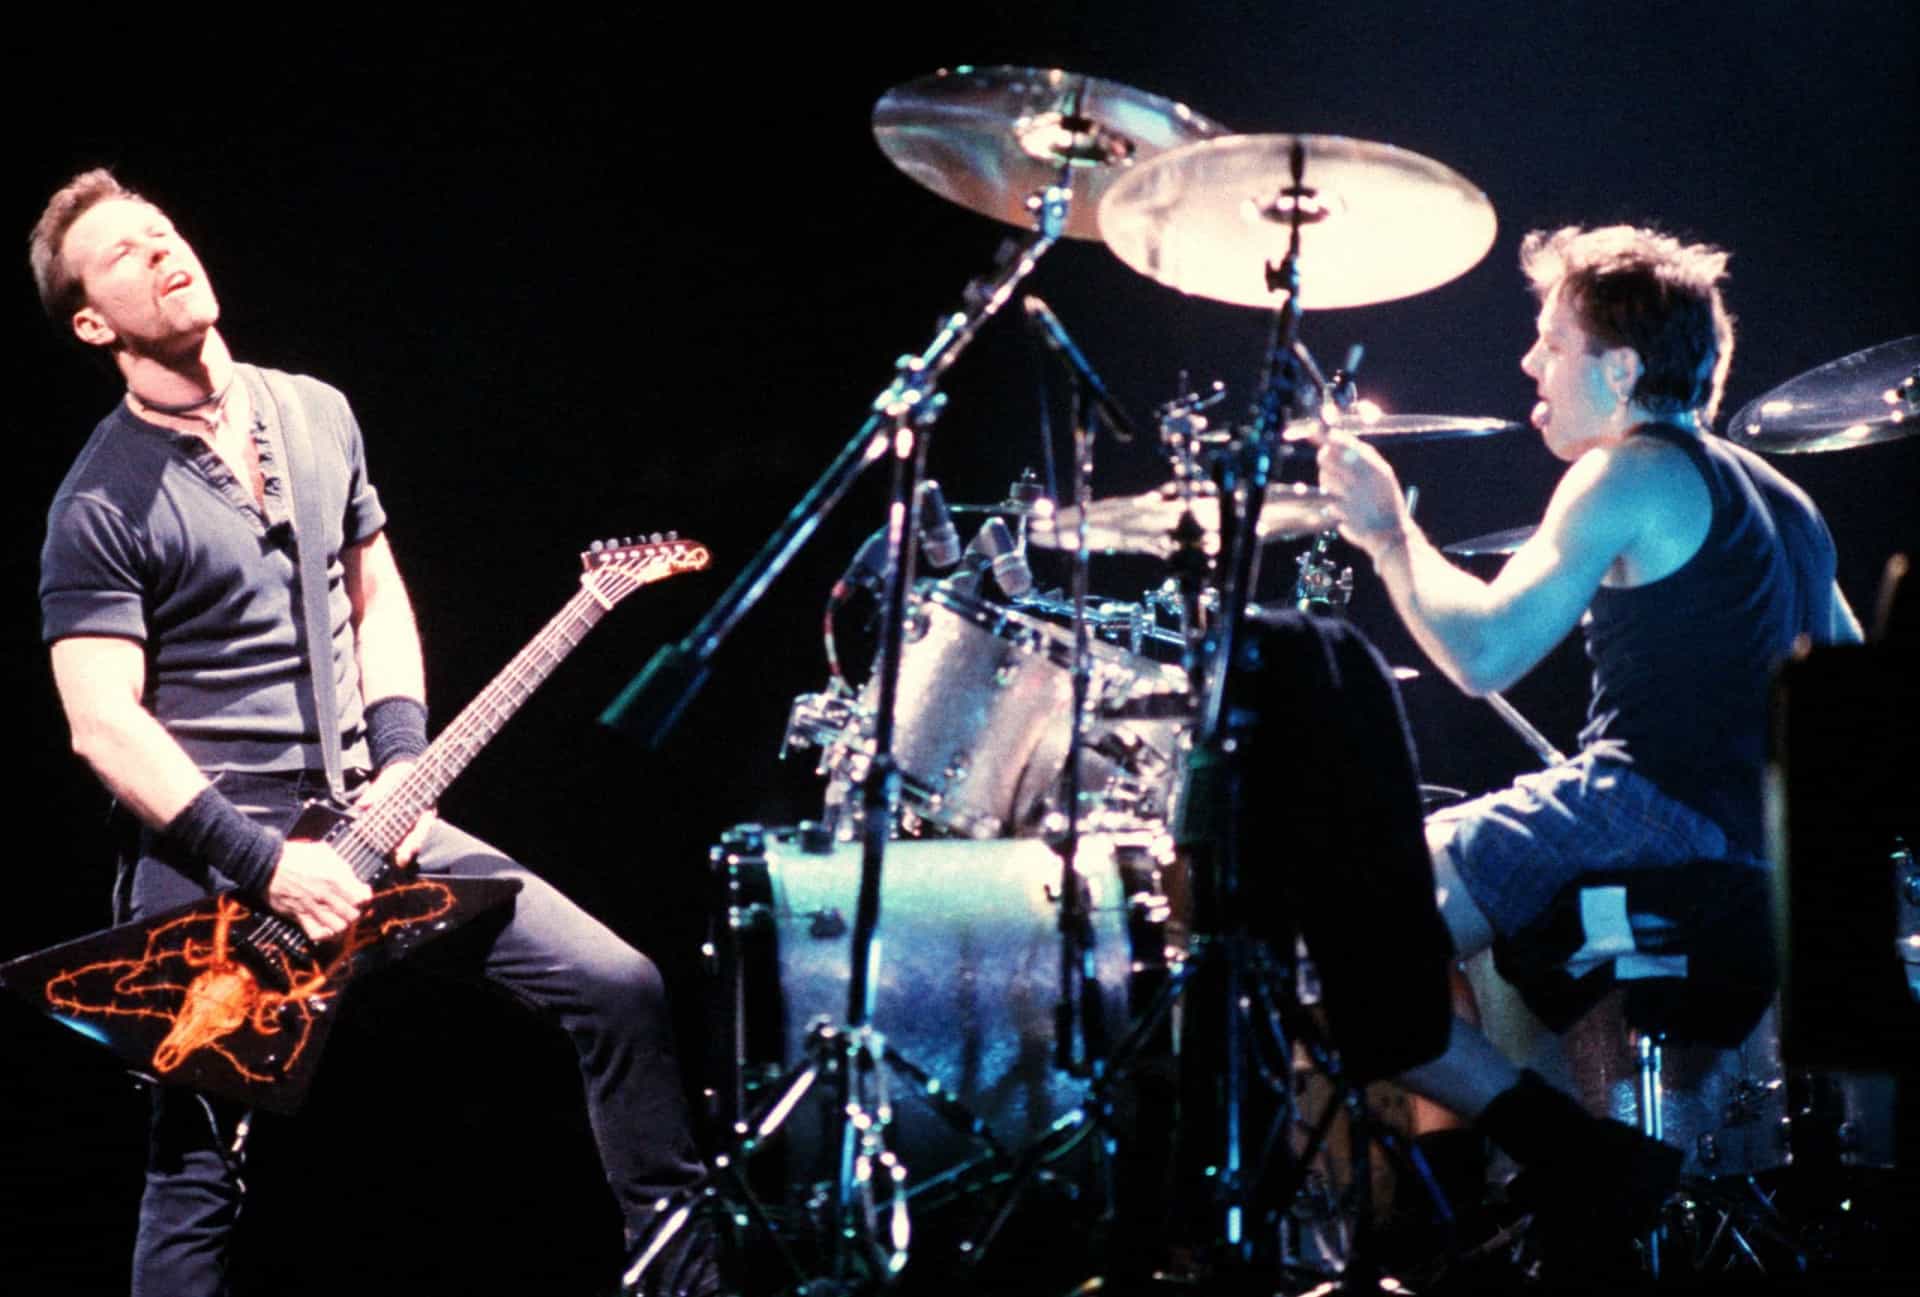 <p>"Devil's Dance", geschrieben von James Hetfield und Lars Ulrich, ist der dritte Song auf Metallicas Album "Reload" von 1997.</p><p>Sie können auch mögen:<a href="https://de.starsinsider.com/n/496617?utm_source=msn.com&utm_medium=display&utm_campaign=referral_description&utm_content=516985"> Diese 30 Filme muss man zumindest einmal im Leben gesehen haben</a></p>